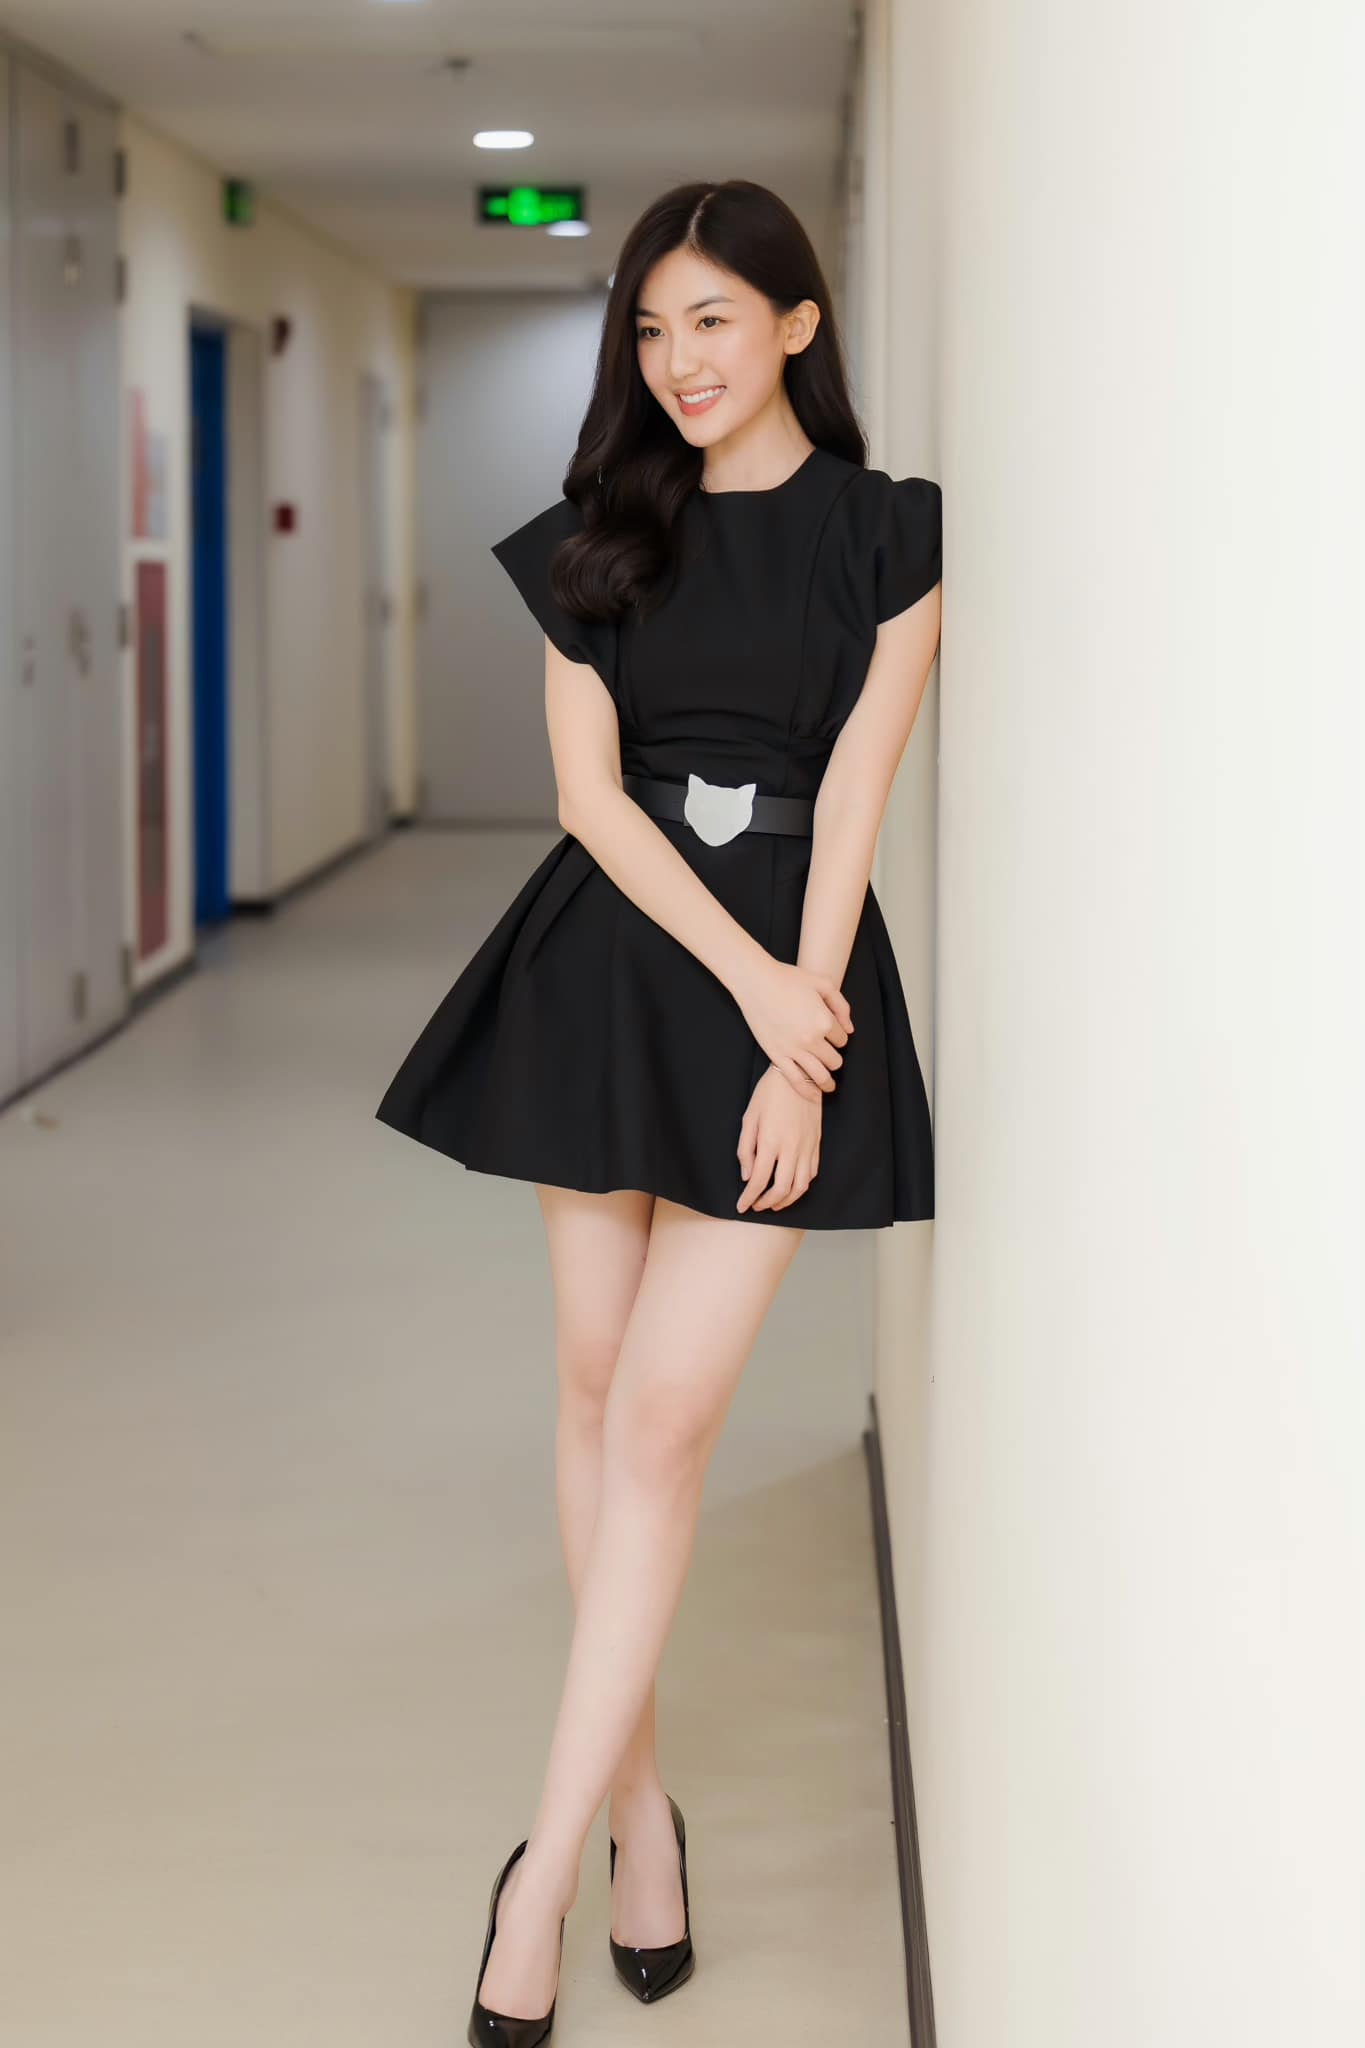 Nữ diễn viên quê Thanh Hóa mặt xinh, dáng đẹp cao hơn 1m70 chẳng thua kém hoa hậu - 9